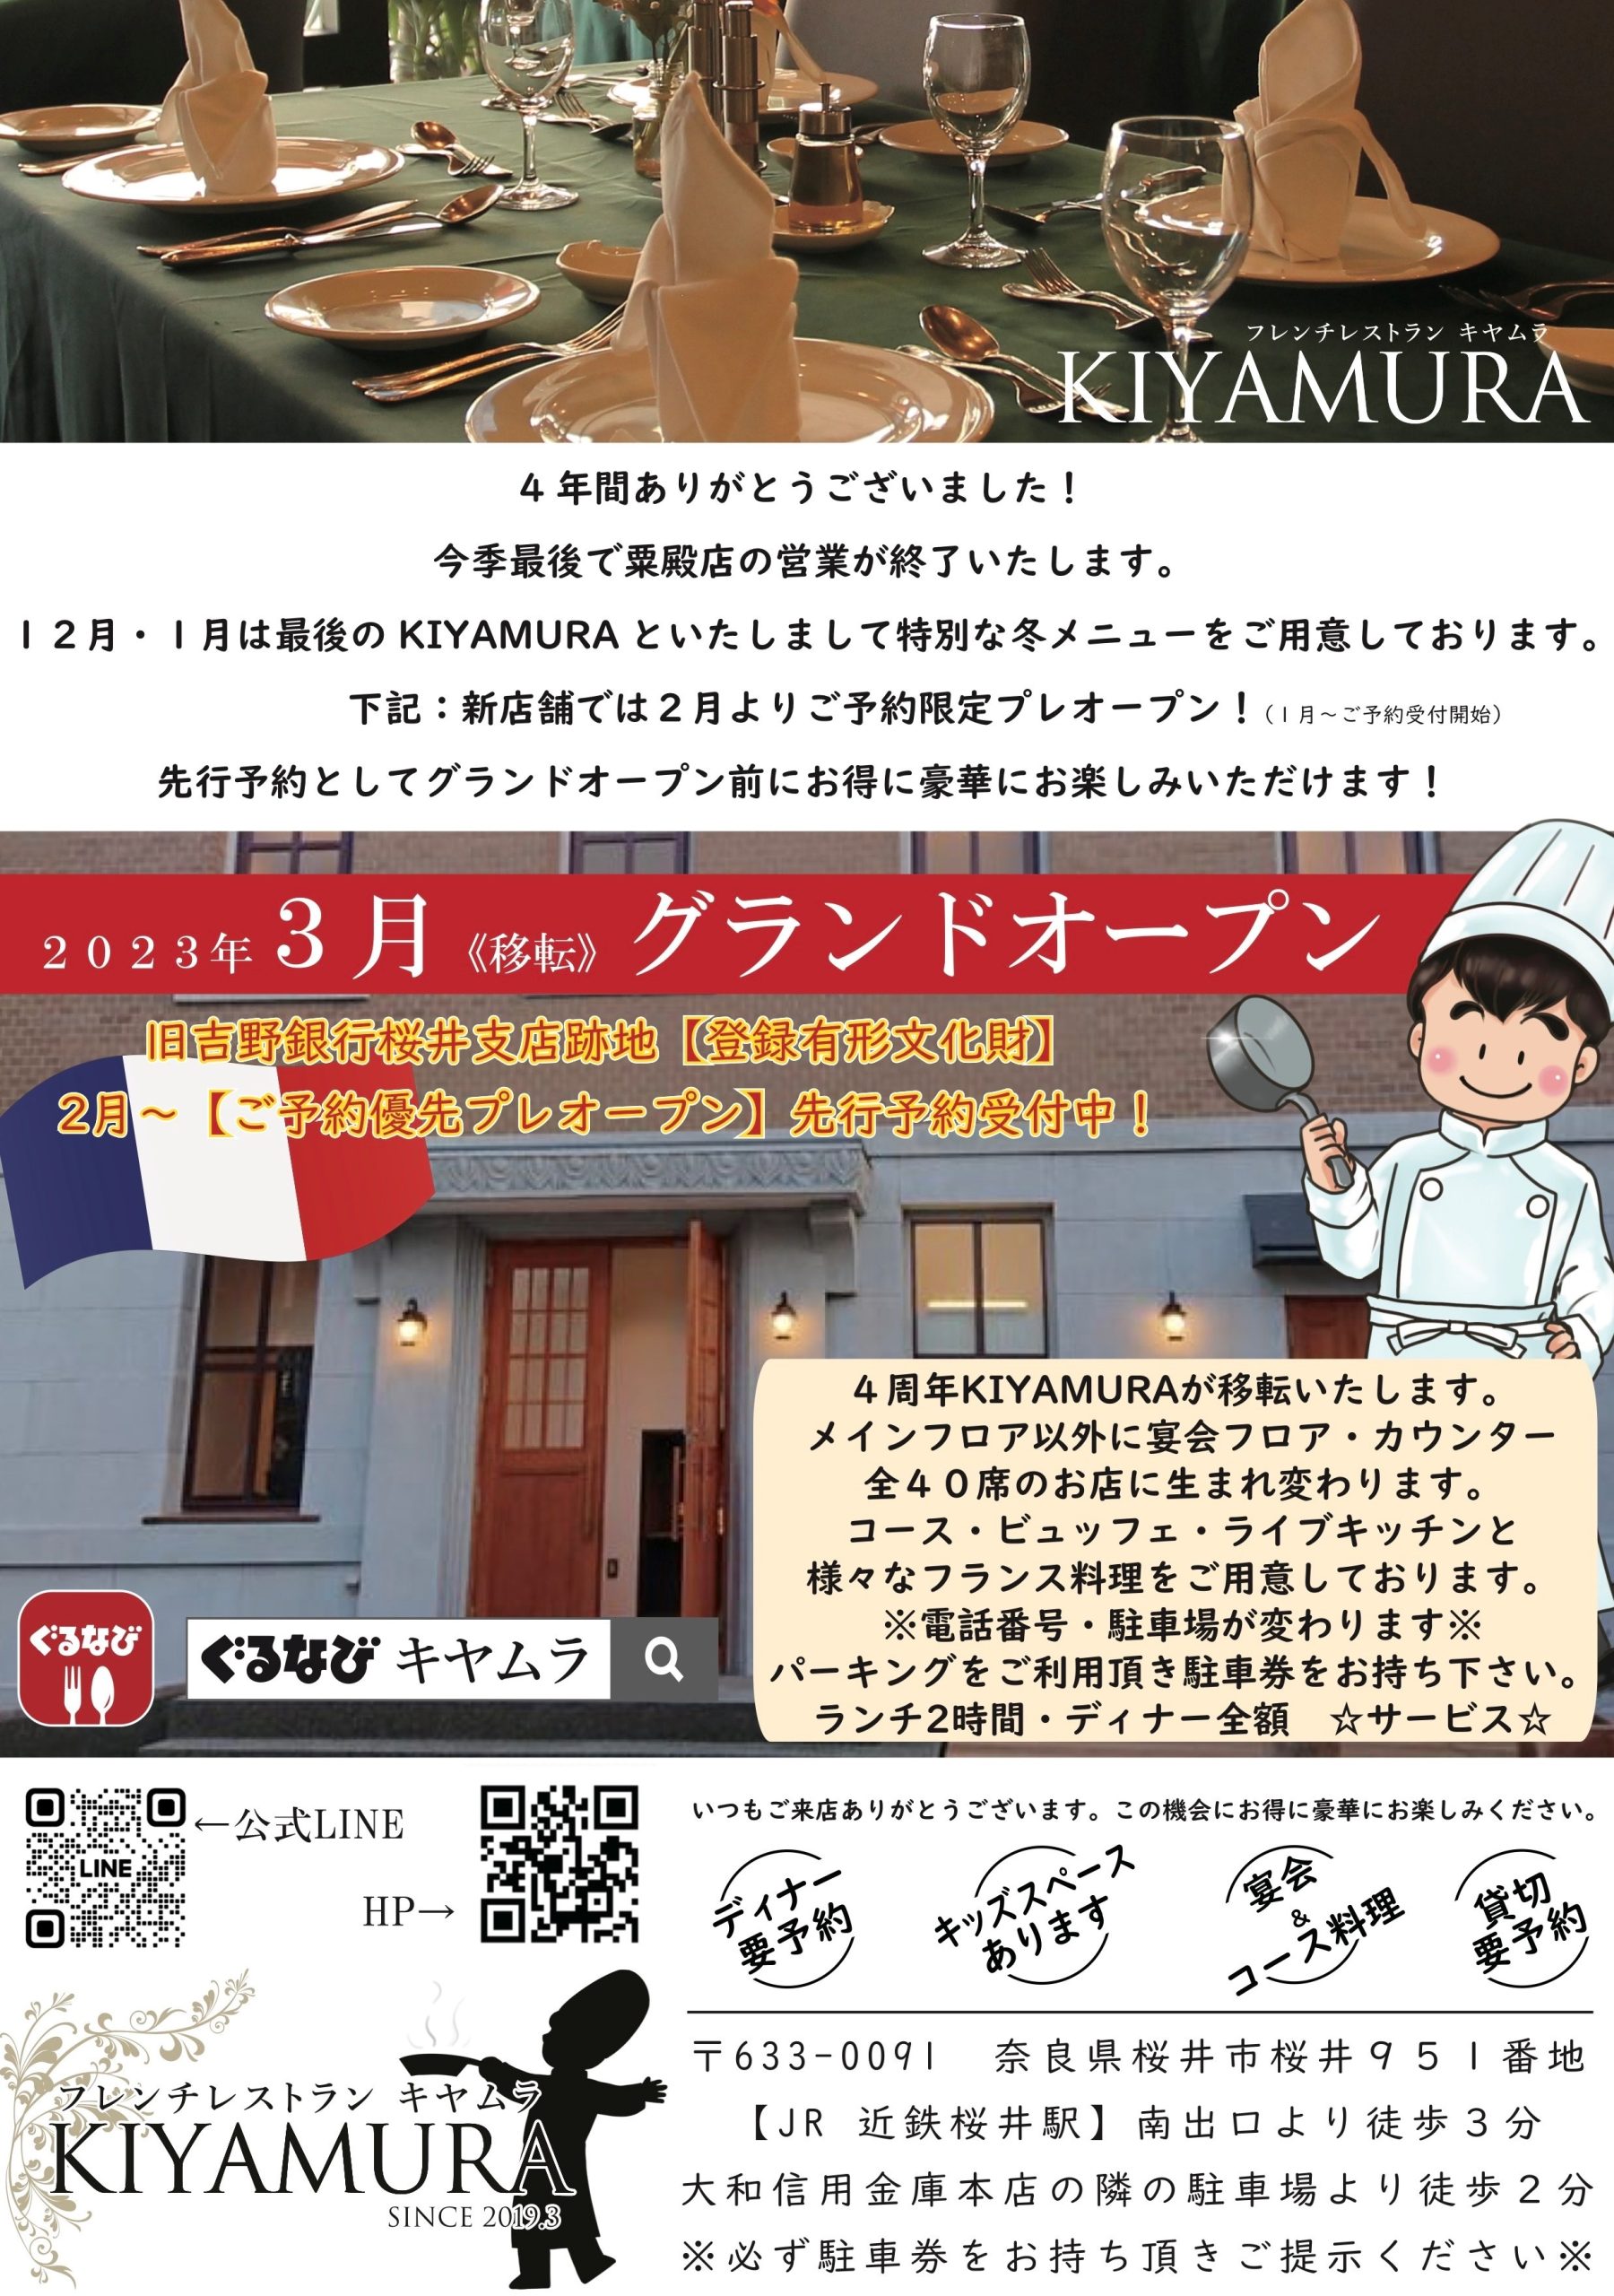 KIYAMURA2023年3月移転グランドオープン